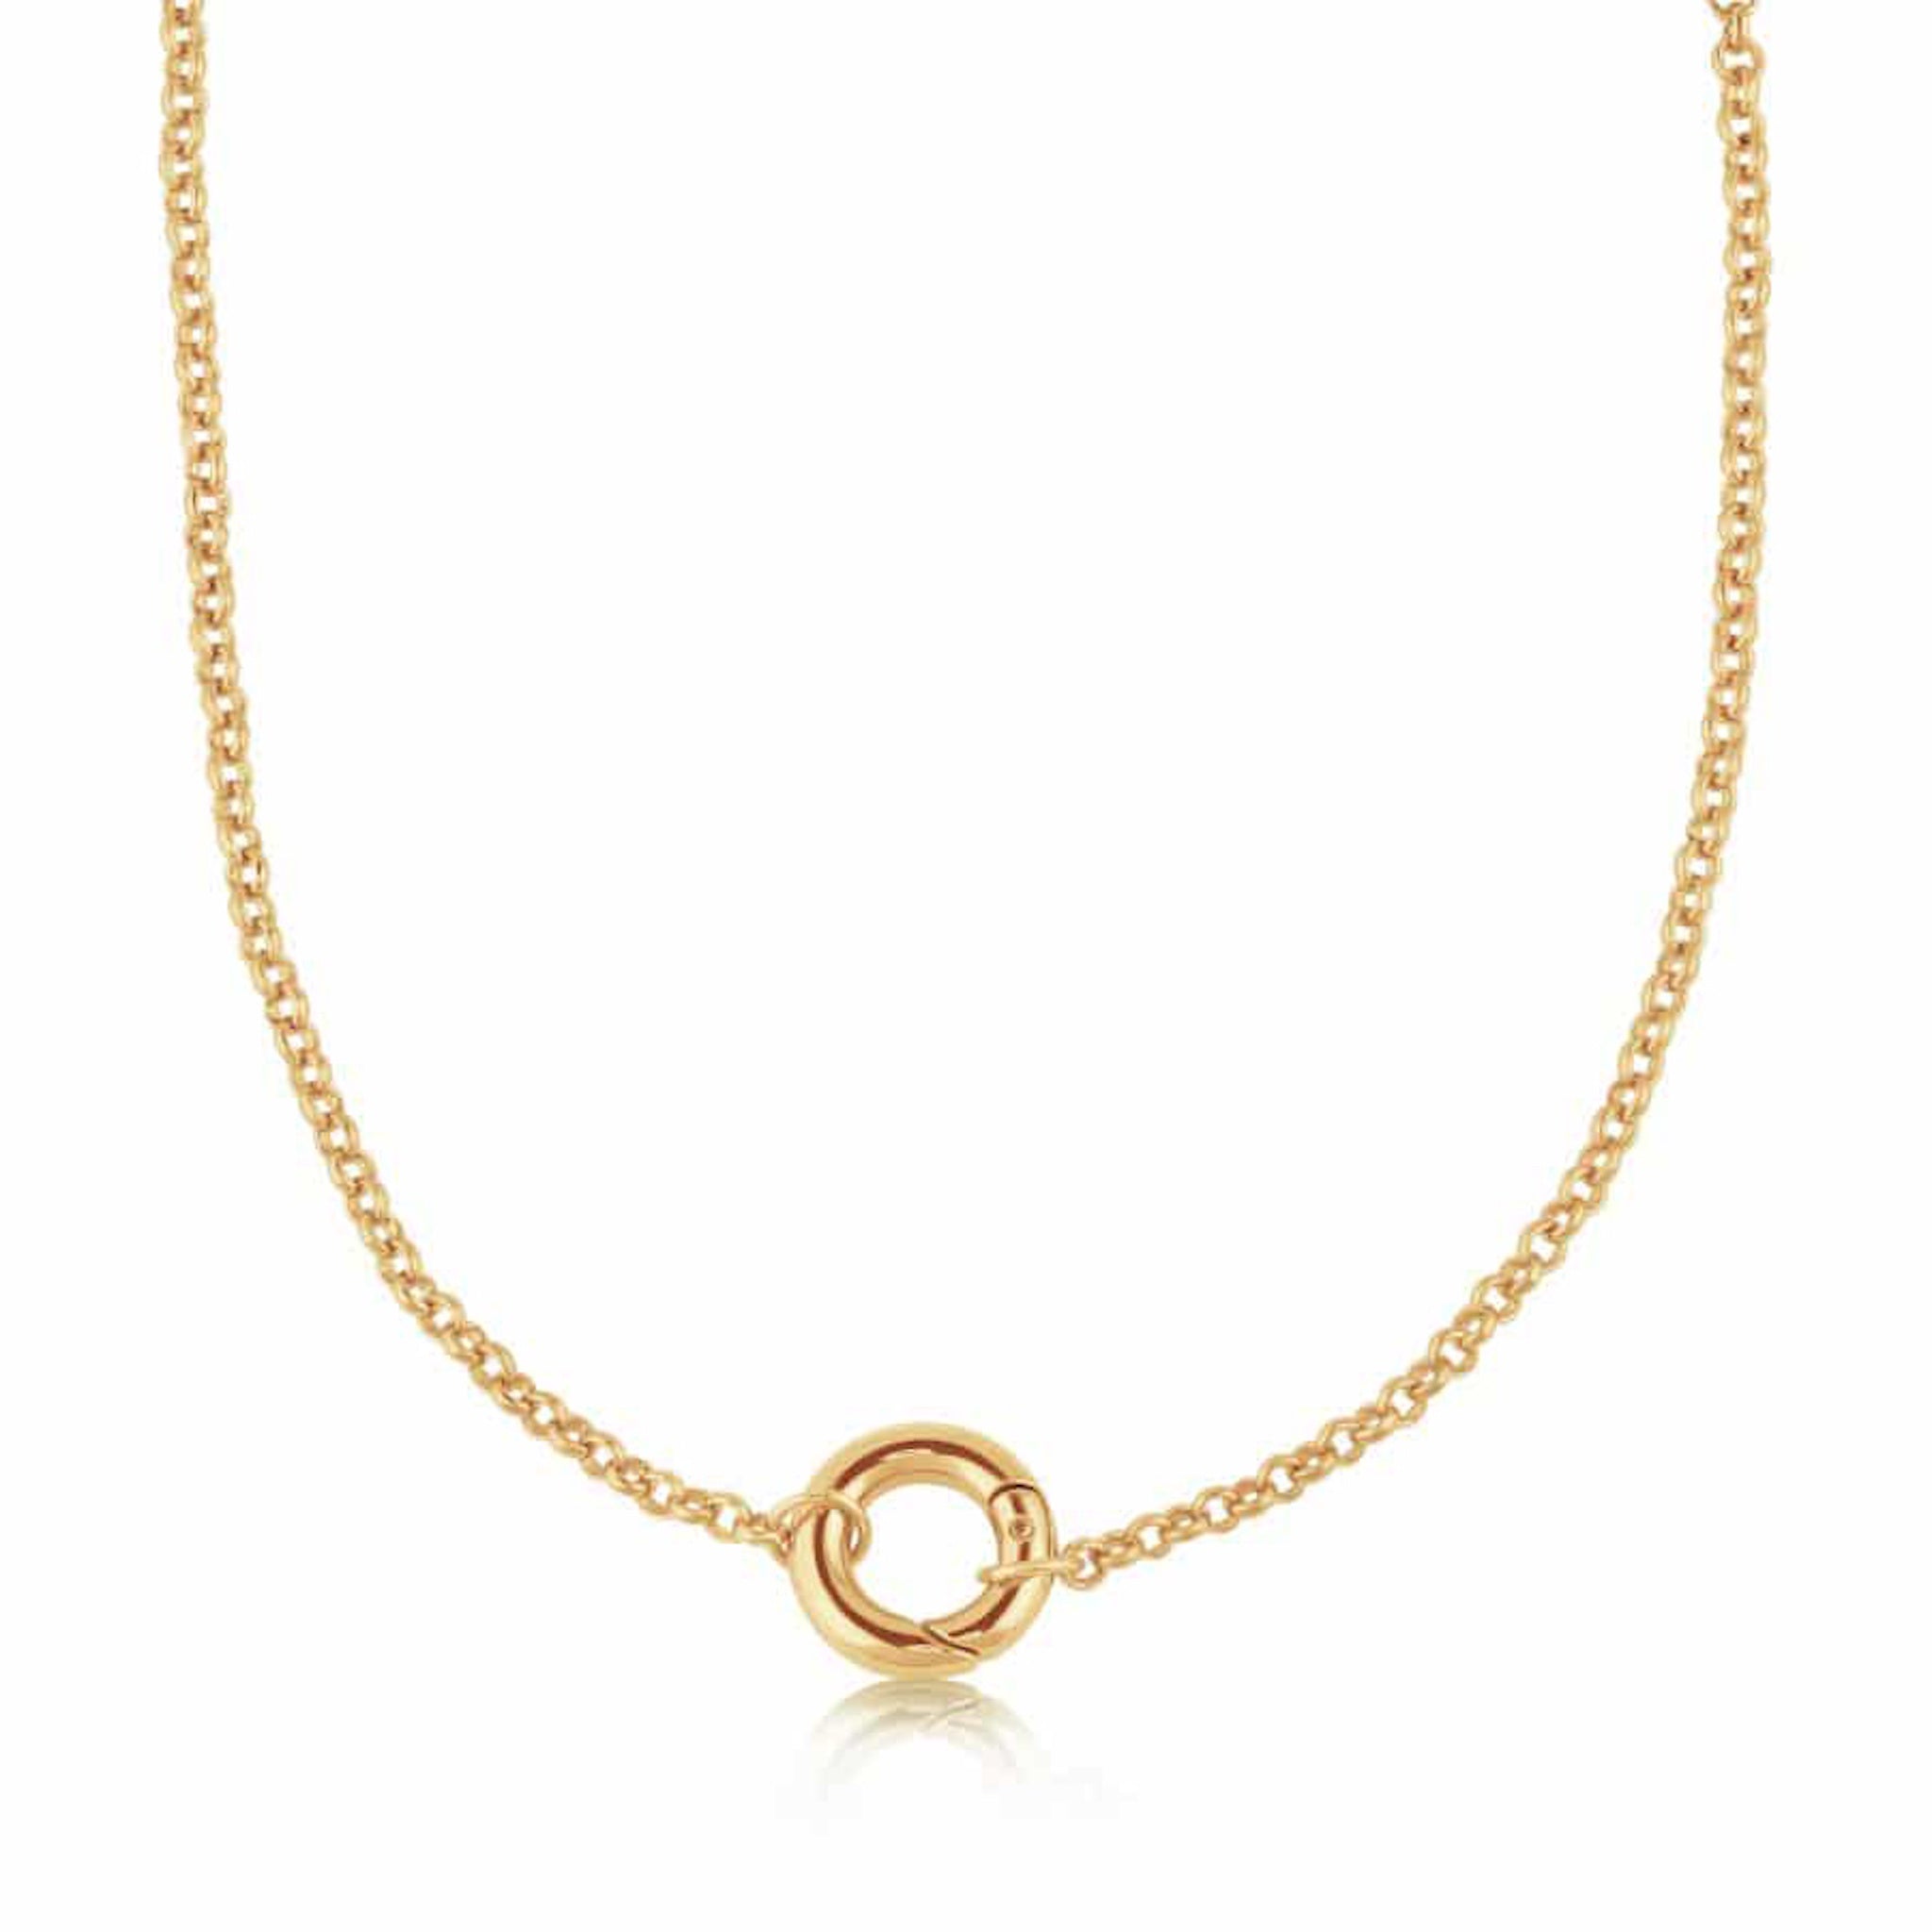 Belcher Chain & Lock Necklace